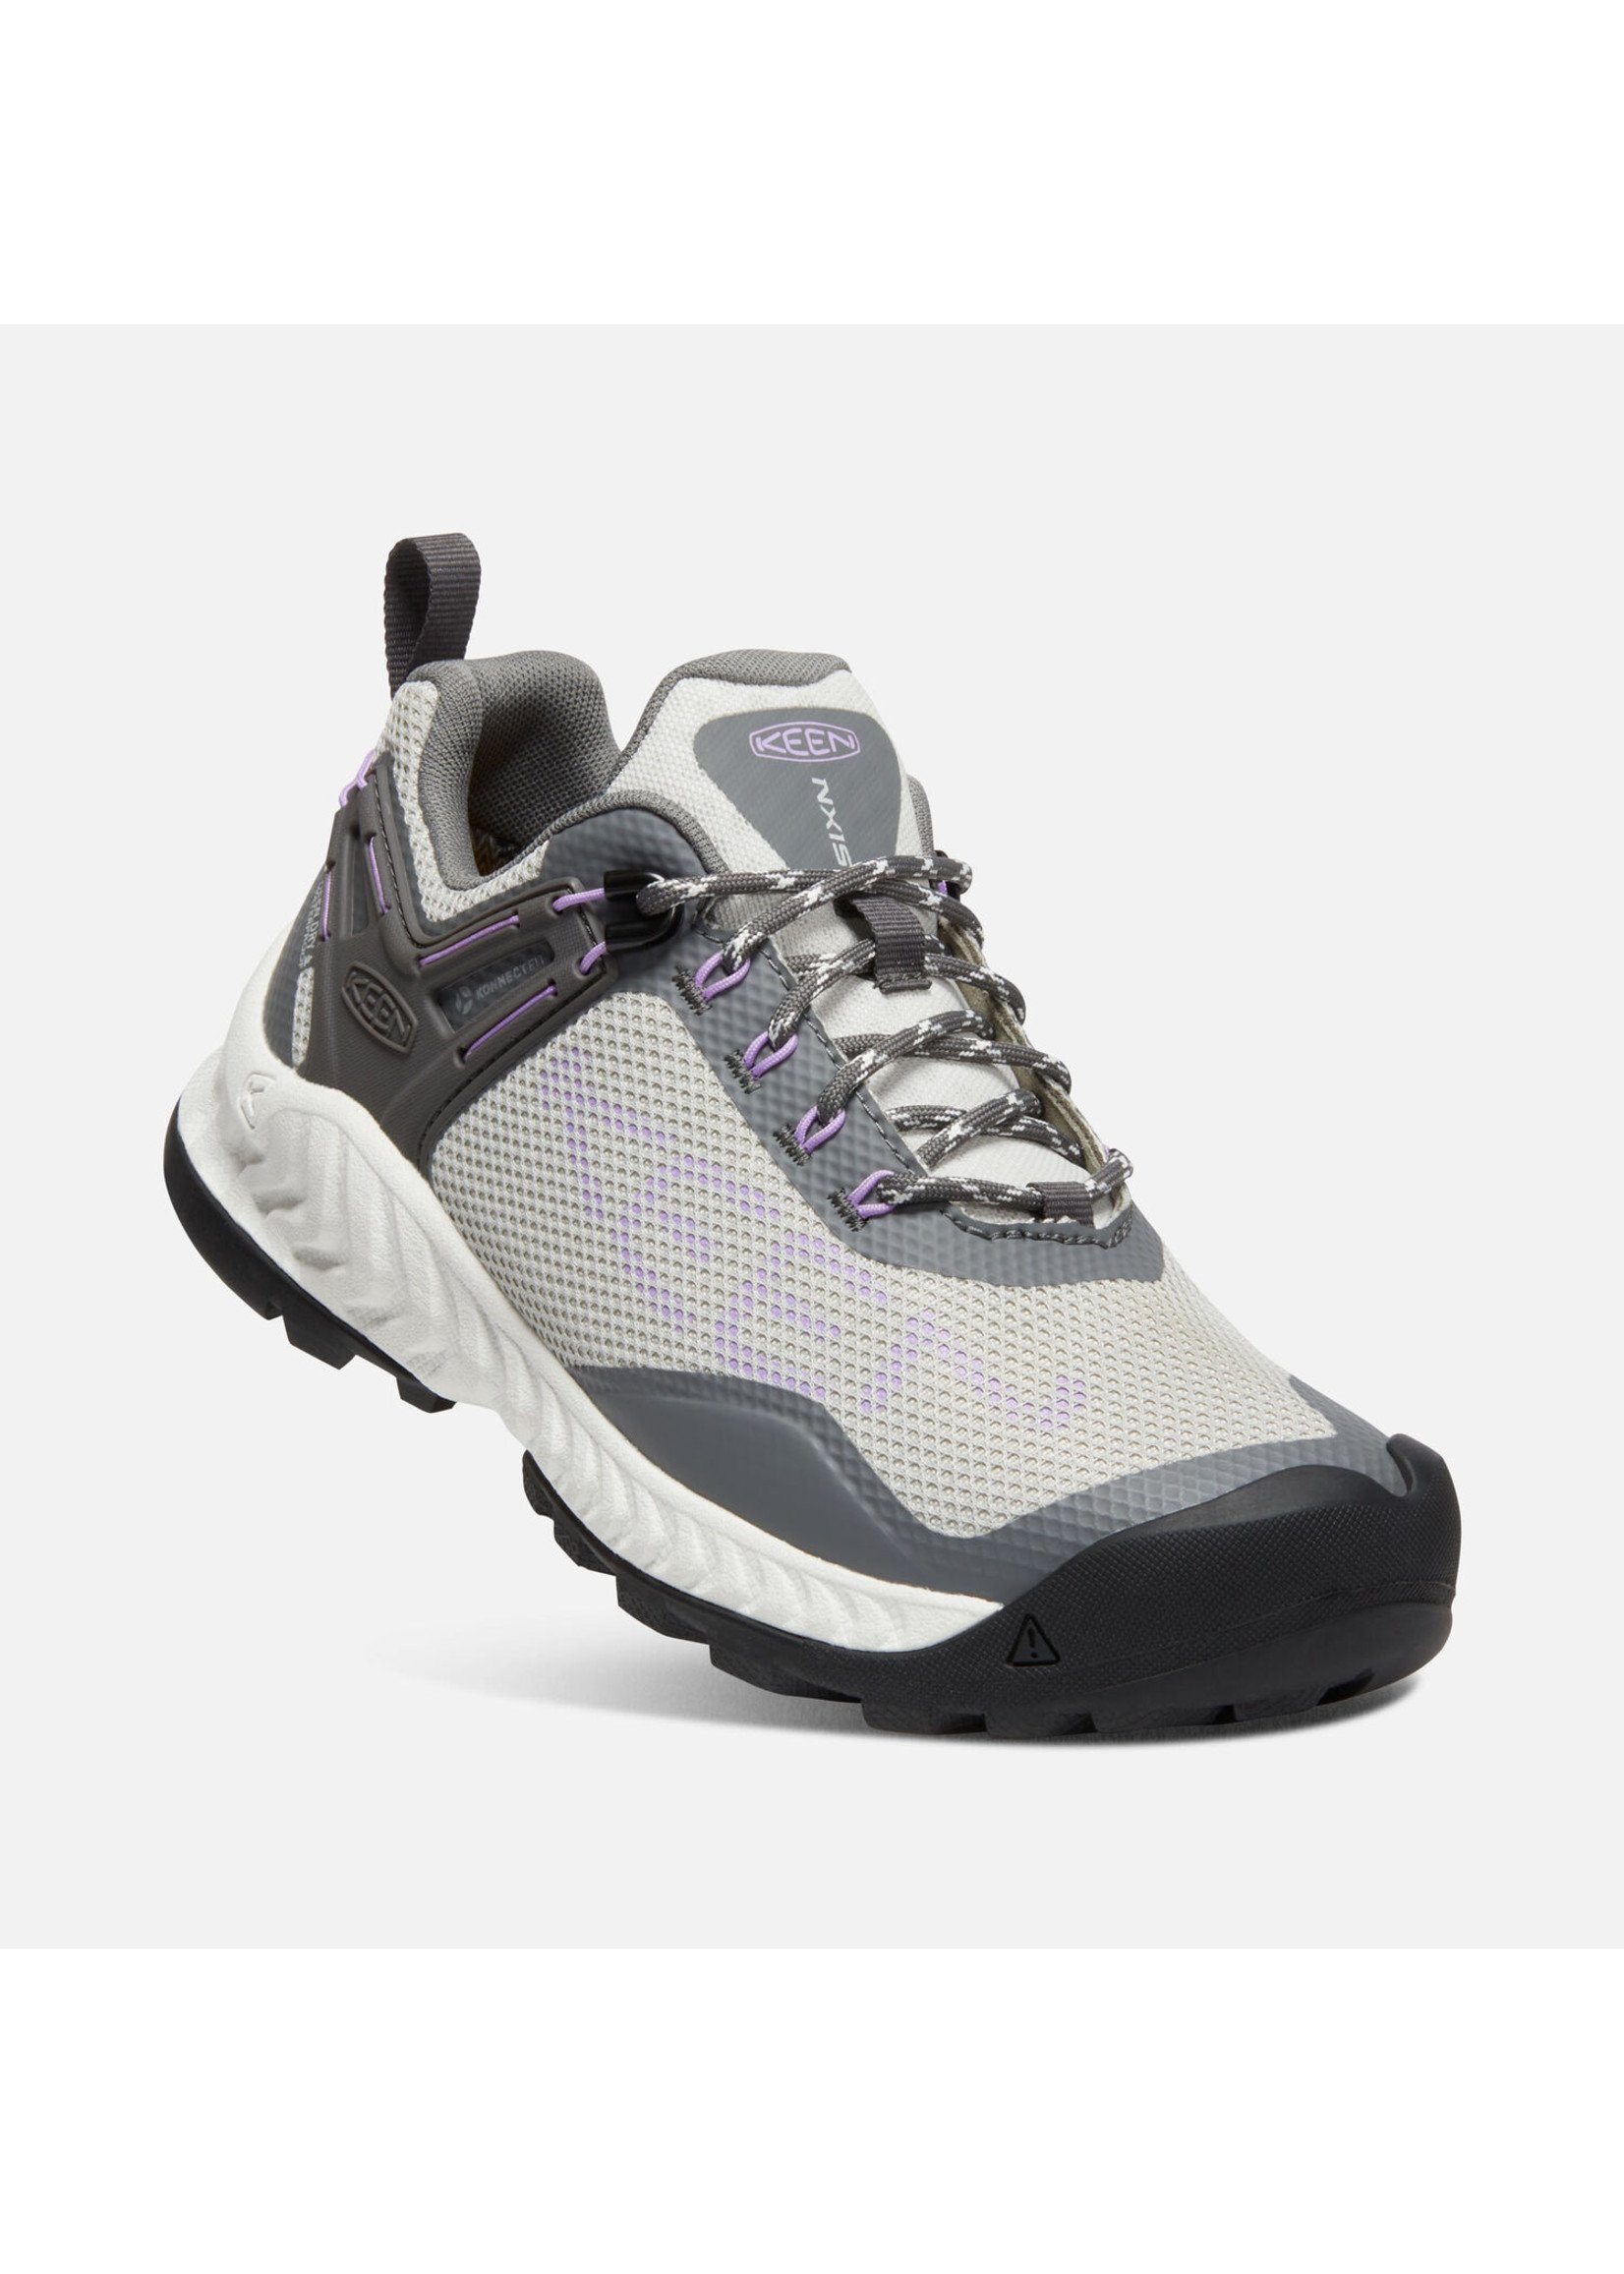 Keen Footwear Womens Nxis Evo Waterproof Steel Grey/English Lavender